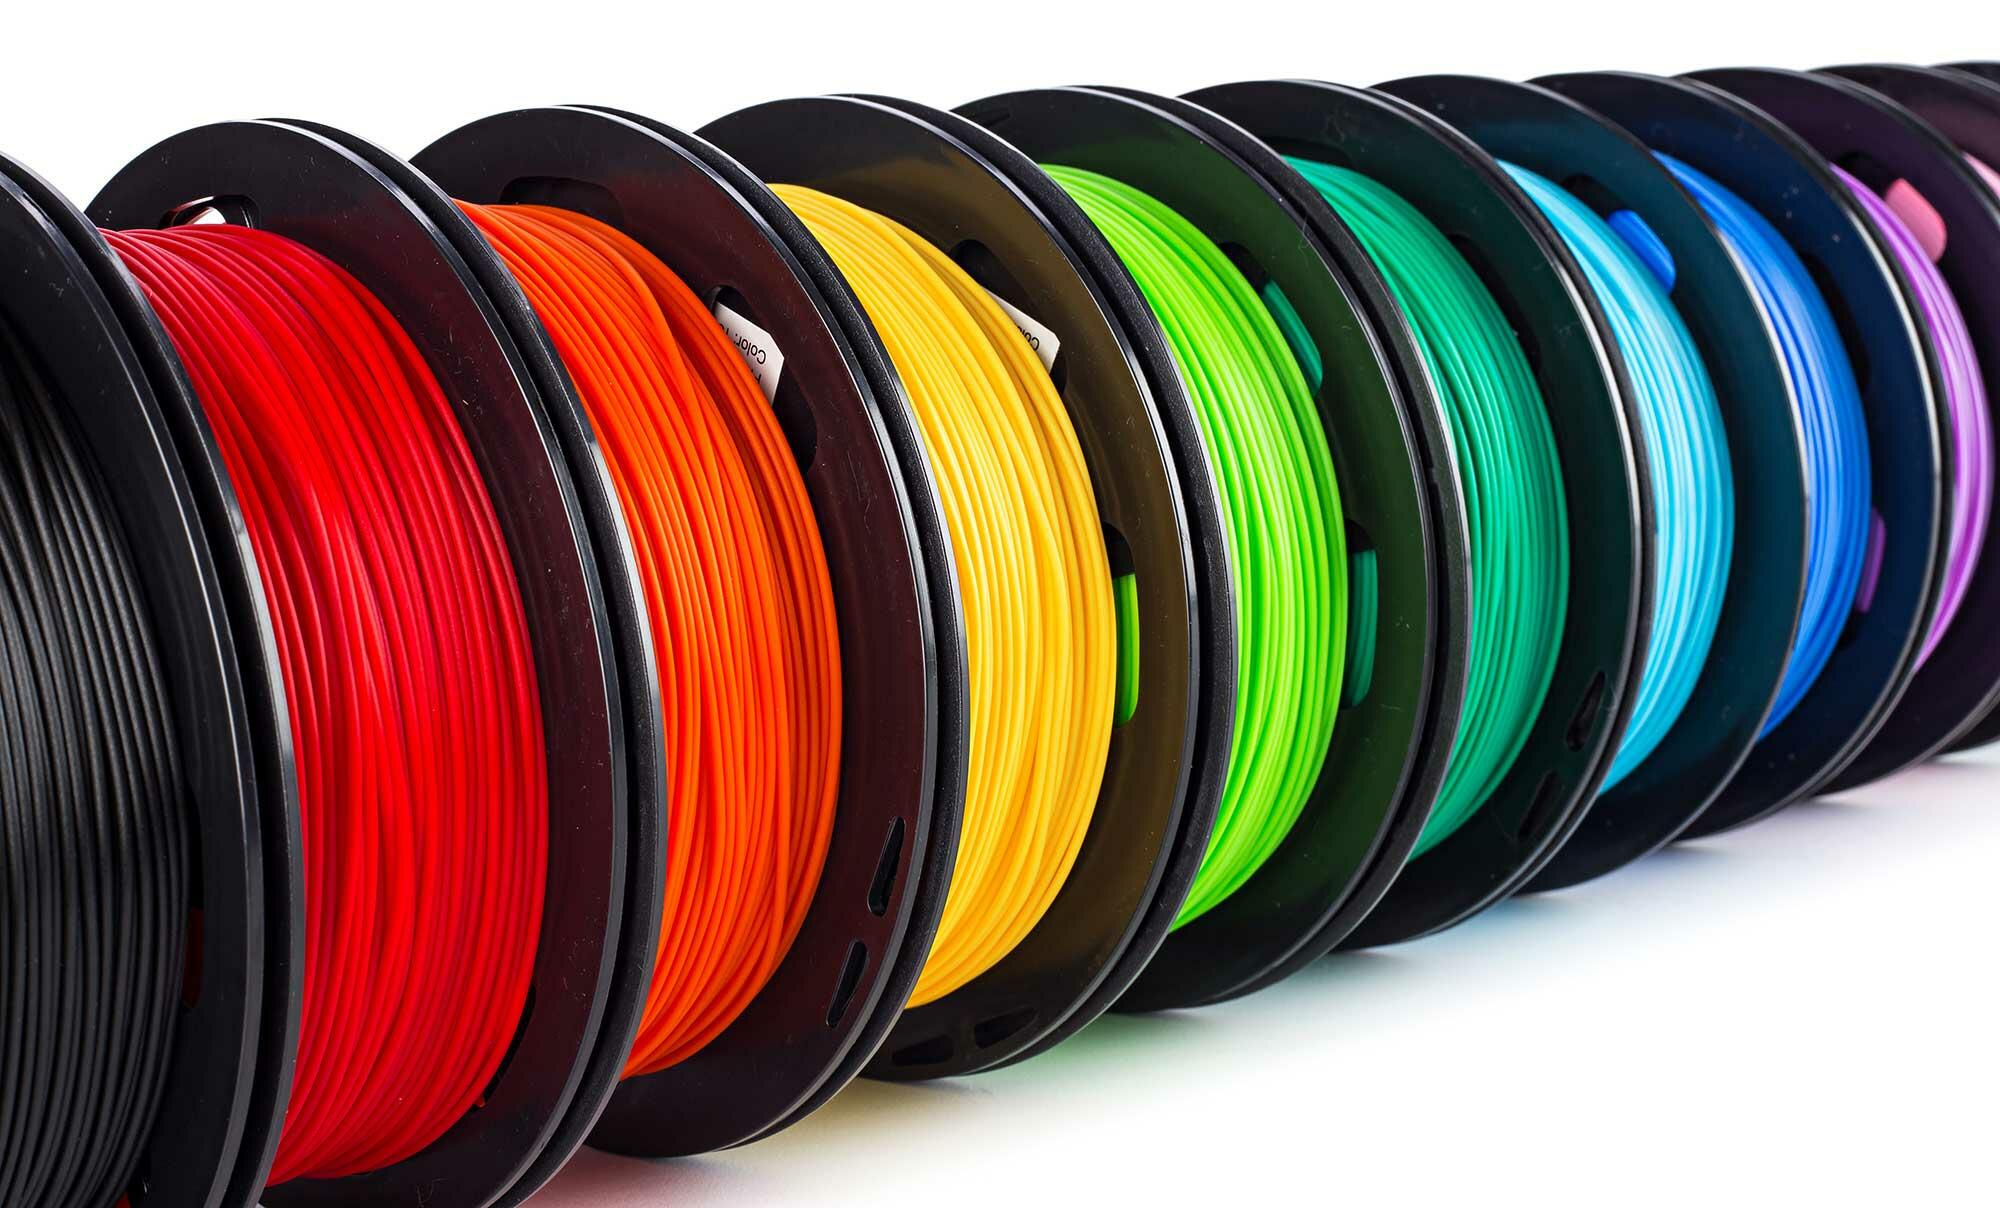 ANYCUBIC Filamento Pla Silk 1.75mm per Stampante 3D, Filo Pla